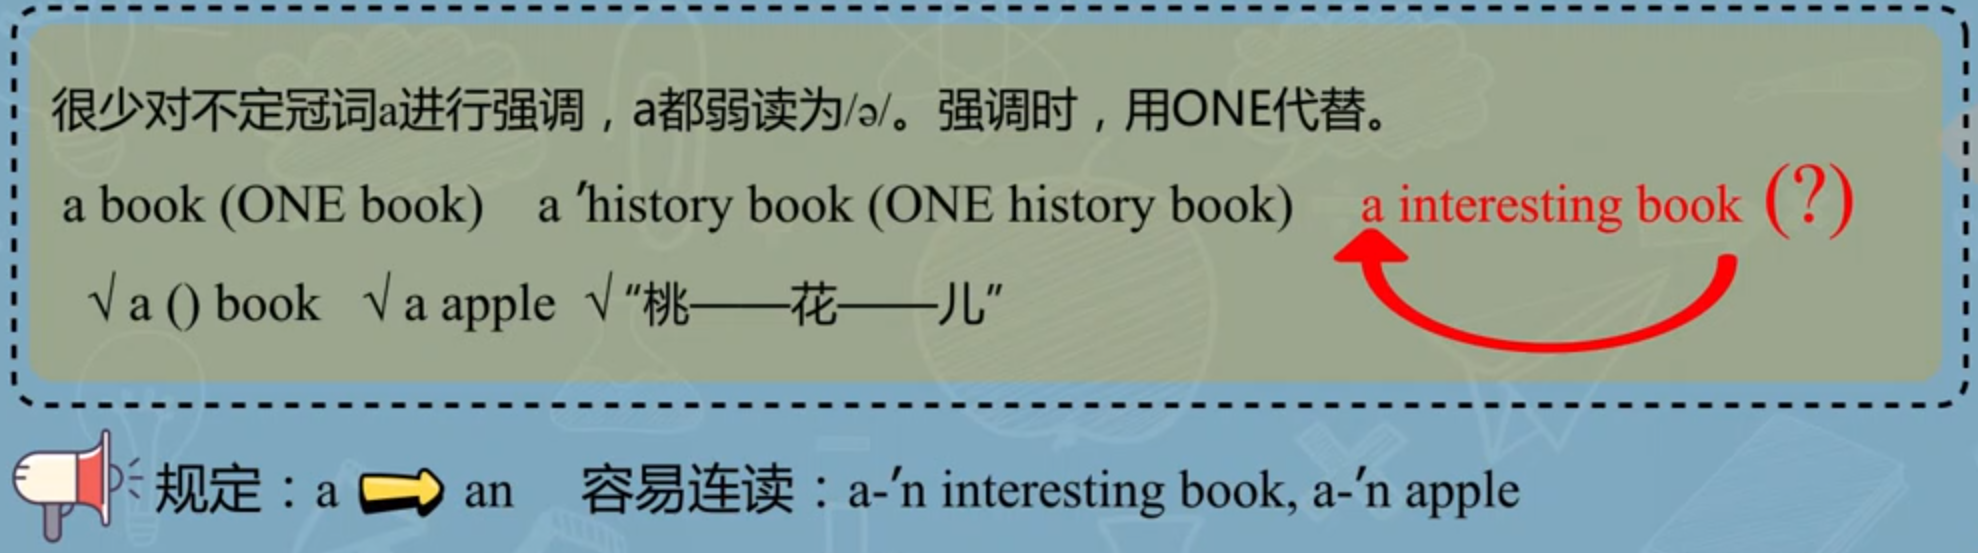 中国地质大学英语语音学习笔记(四):英语连读——弱读,冠词连读方法